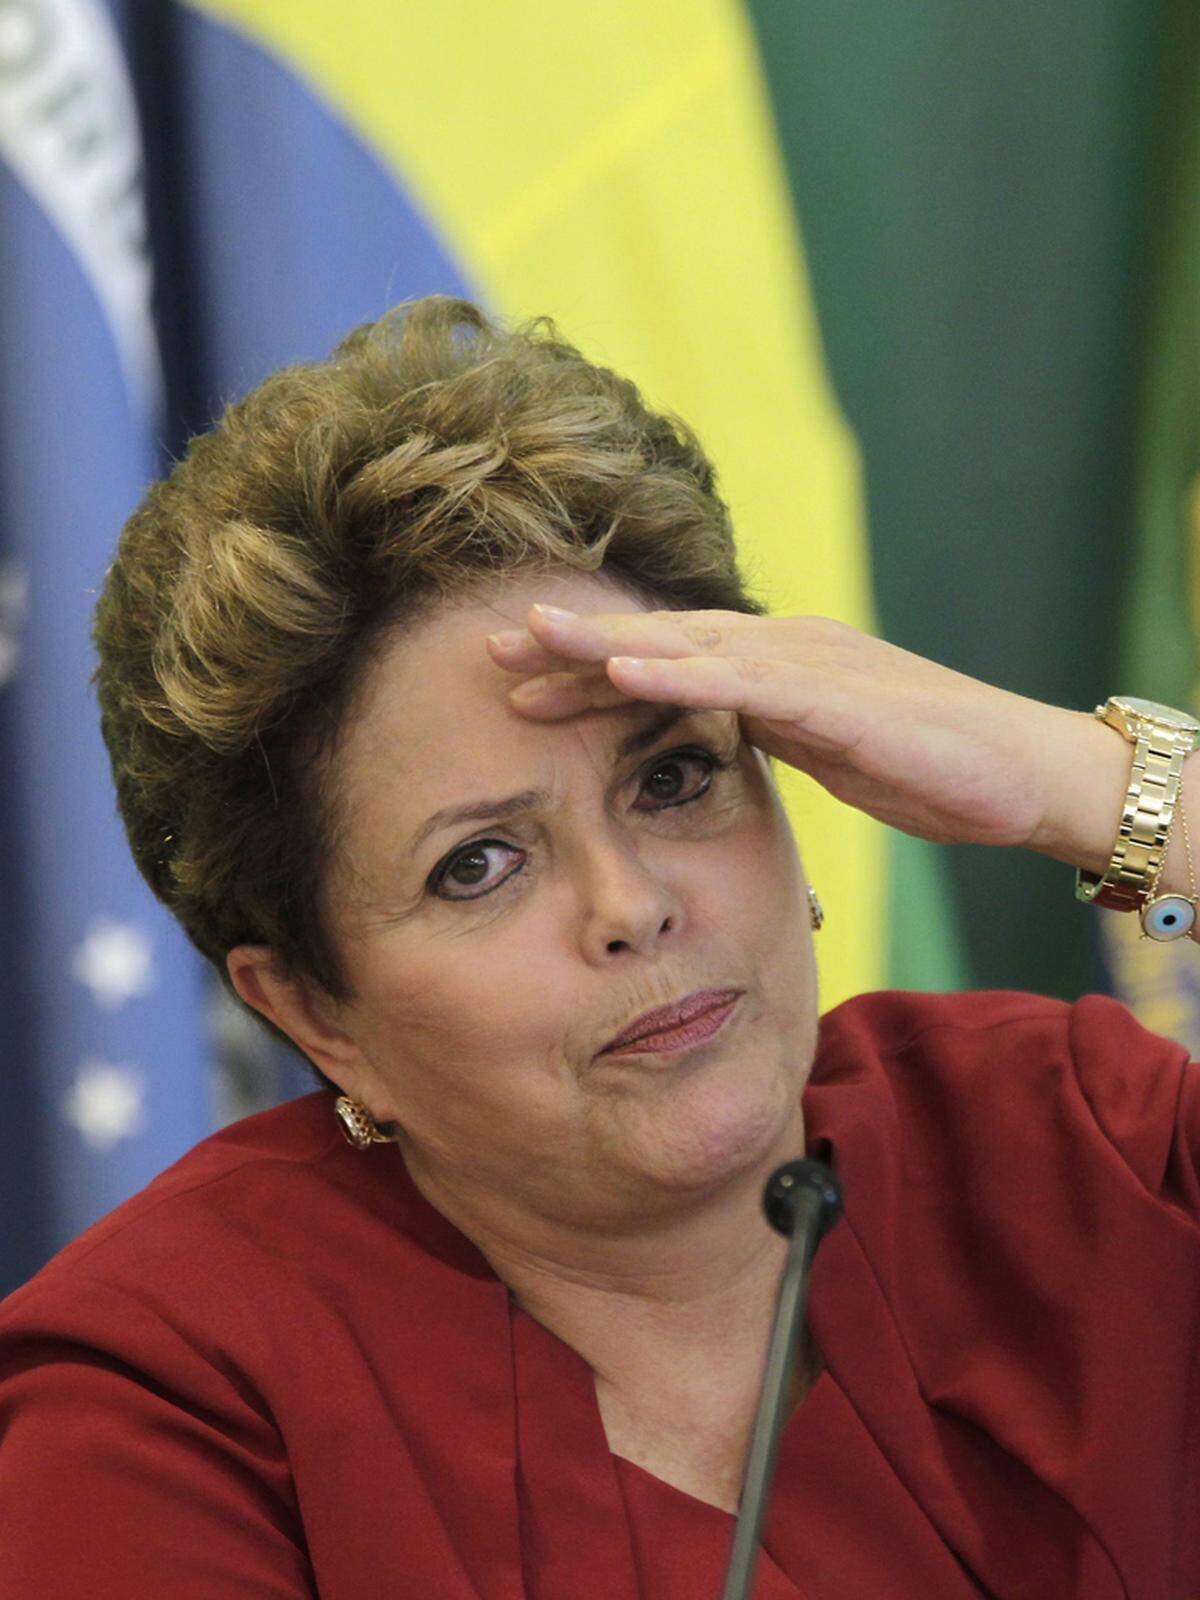 Seit 2011 steht Dilma Rousseff an der Spitze des größten Lands des Kontinents. Die charismatische Ex-Guerillera sieht die Armutsbekämpfung als ein Hauptziel an. Das Programm "Brasilien ohne Elend" der 65-Jährigen soll gut 16 Millionen Menschen aus der Misere holen. 2012 stieg der Mindestlohn auf umgerechnet 256 Euro monatlich.